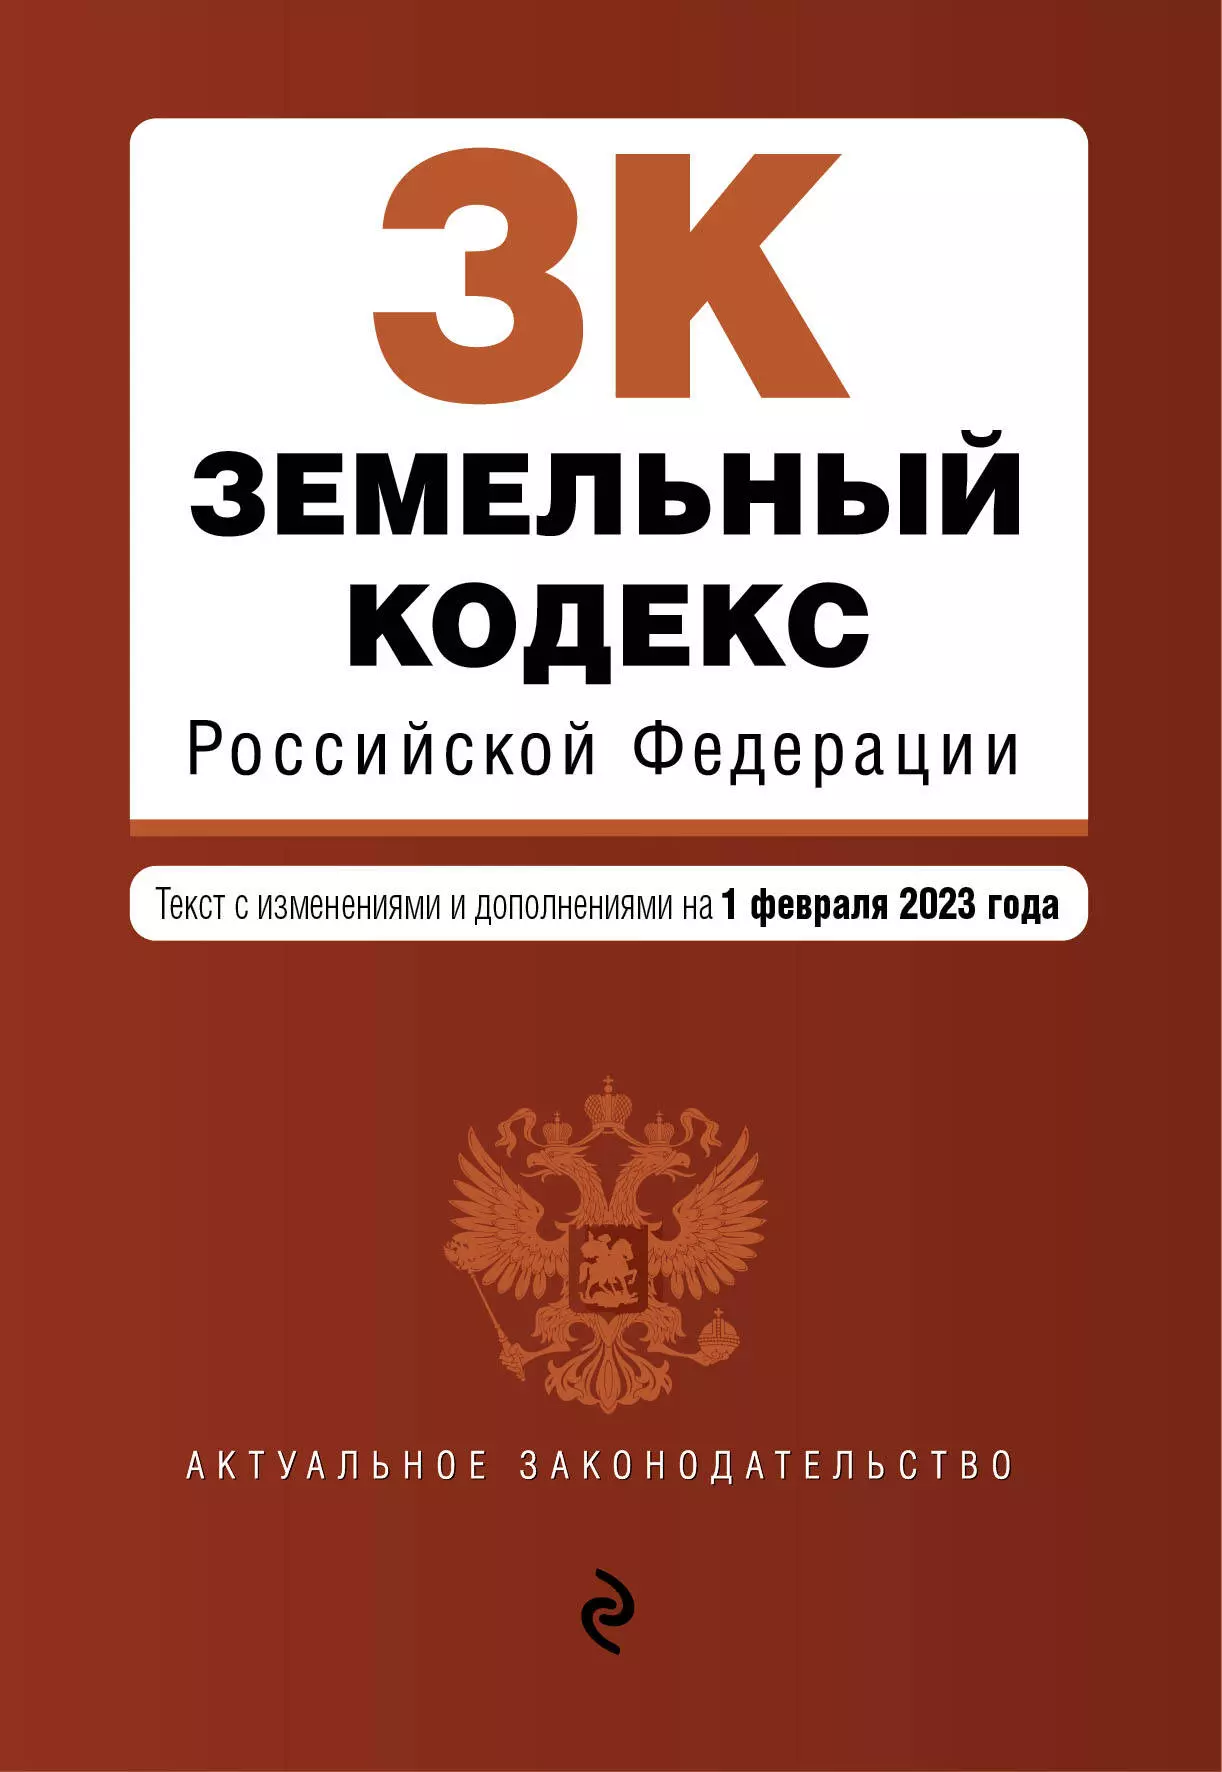  - Земельный кодекс Российской Федерации: текст с изменениями и дополнениями на 1 февраля 2023 года